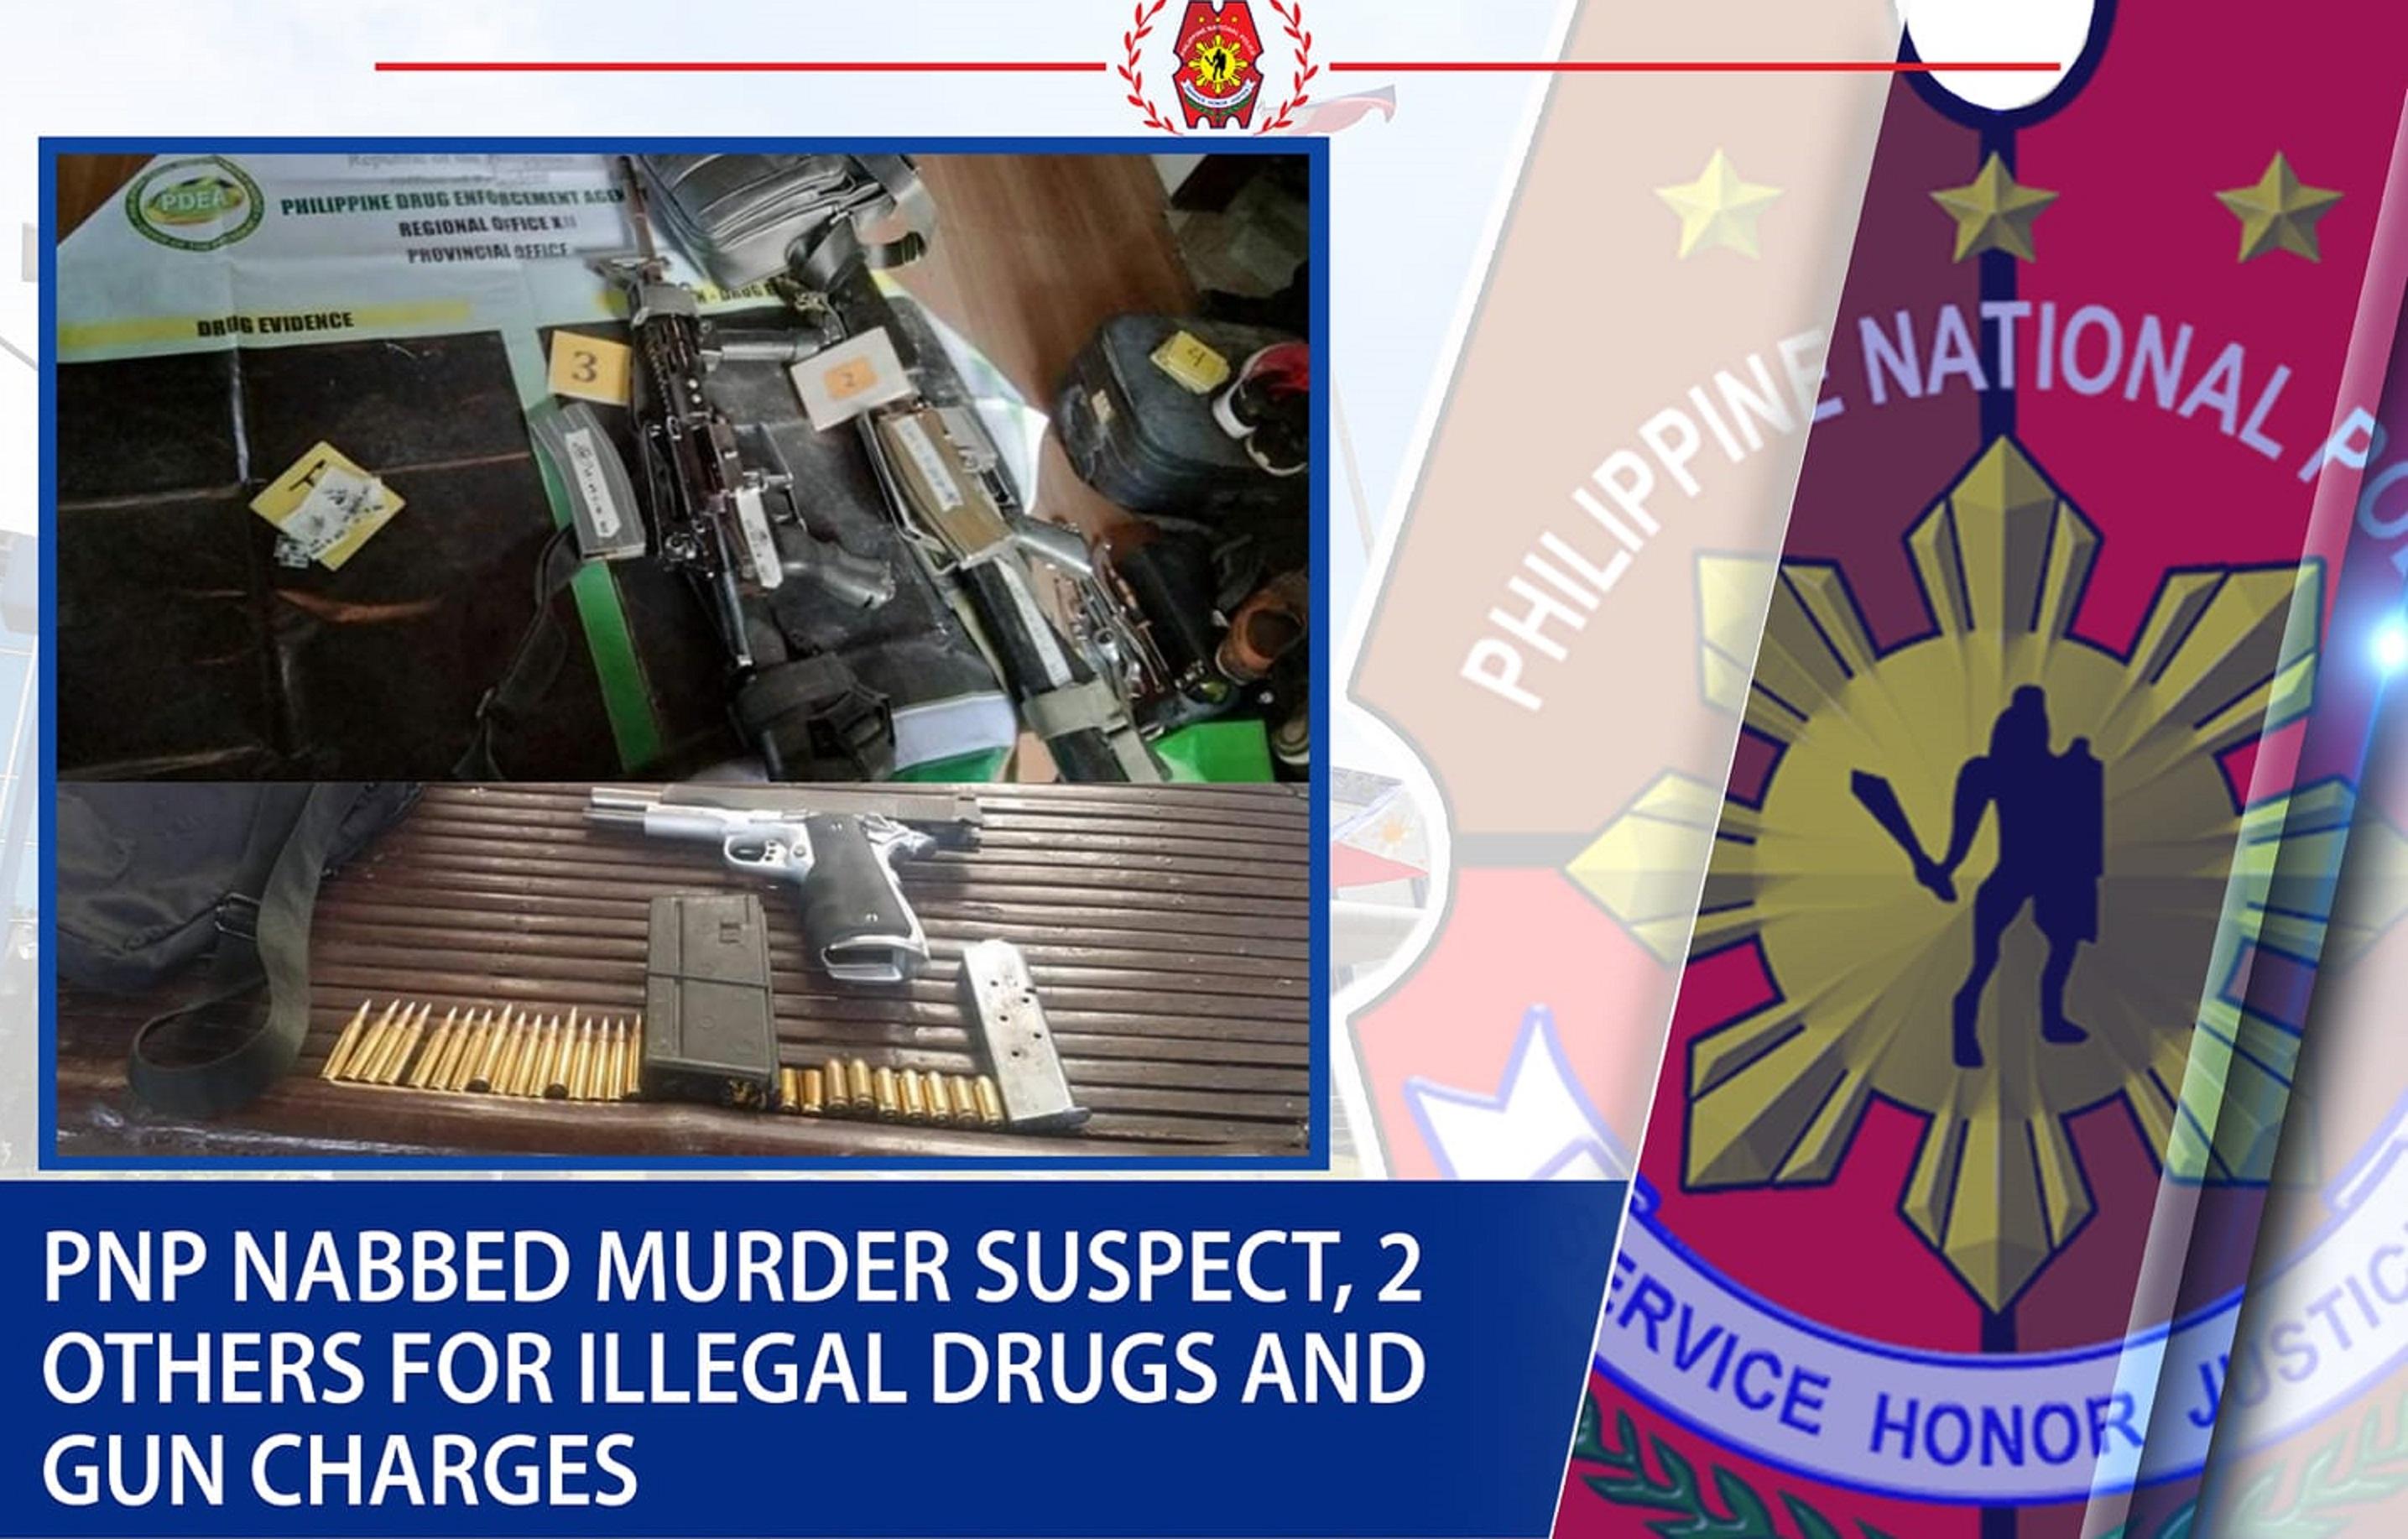 Tersangka pembunuhan ditangkap di Cotabato;  2 lainnya ditangkap karena senjata api ilegal, narkoba GMA News Online